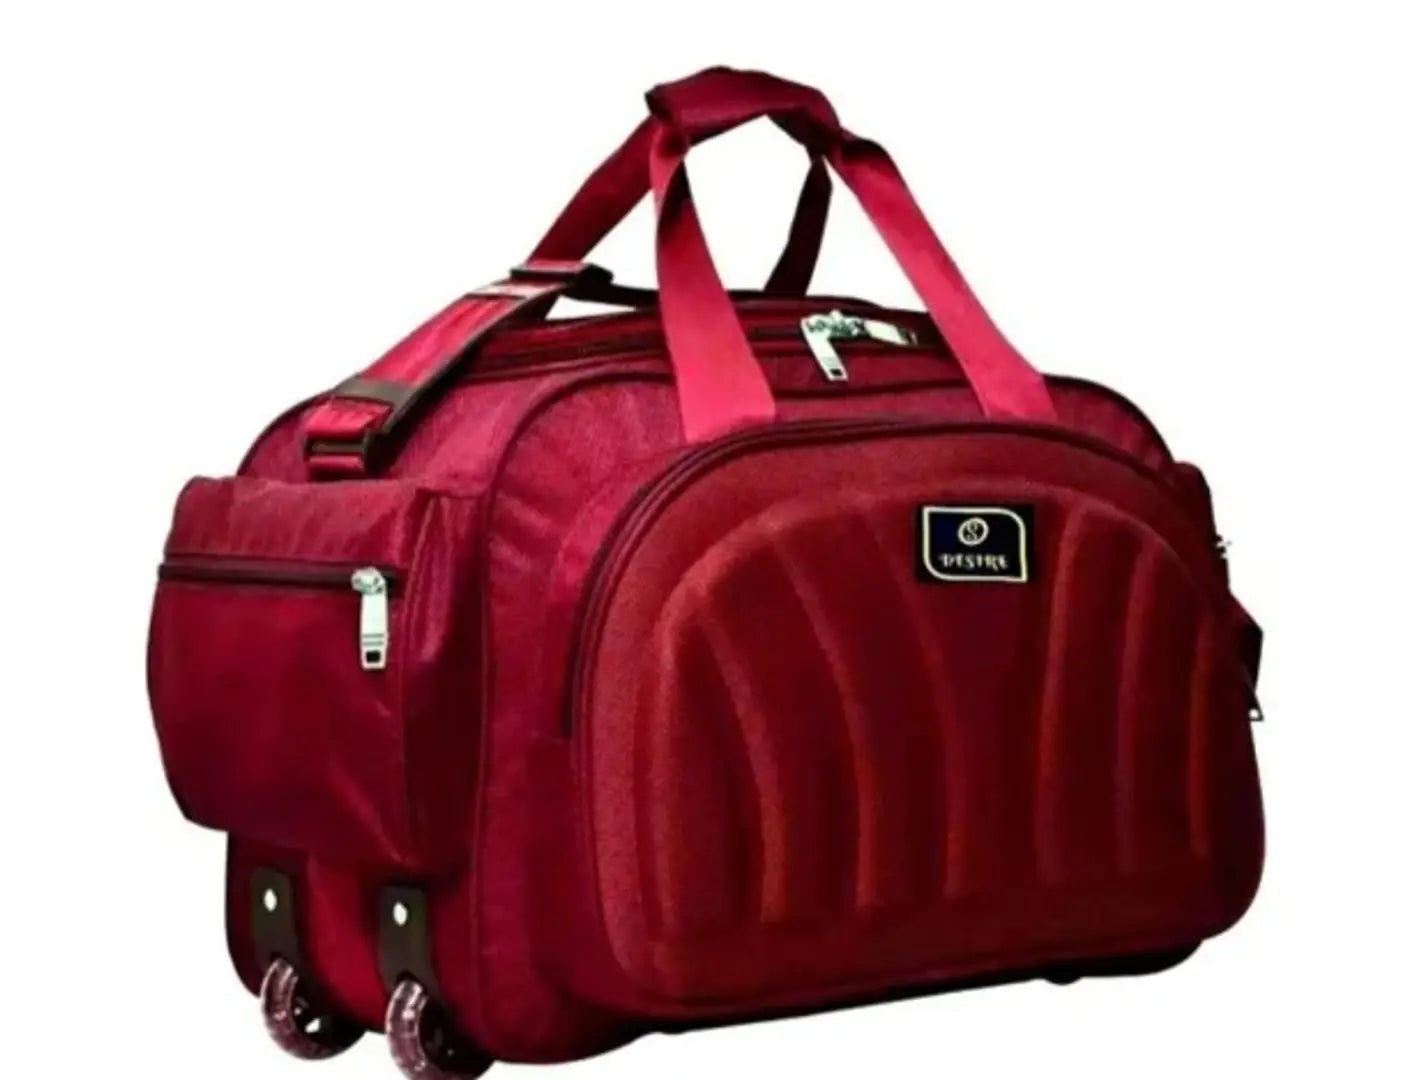 55 L Strolley Duffel Bag - TRAVEL TROLLEY LUGGAGE BAG - Multicolor - Regular Capacity